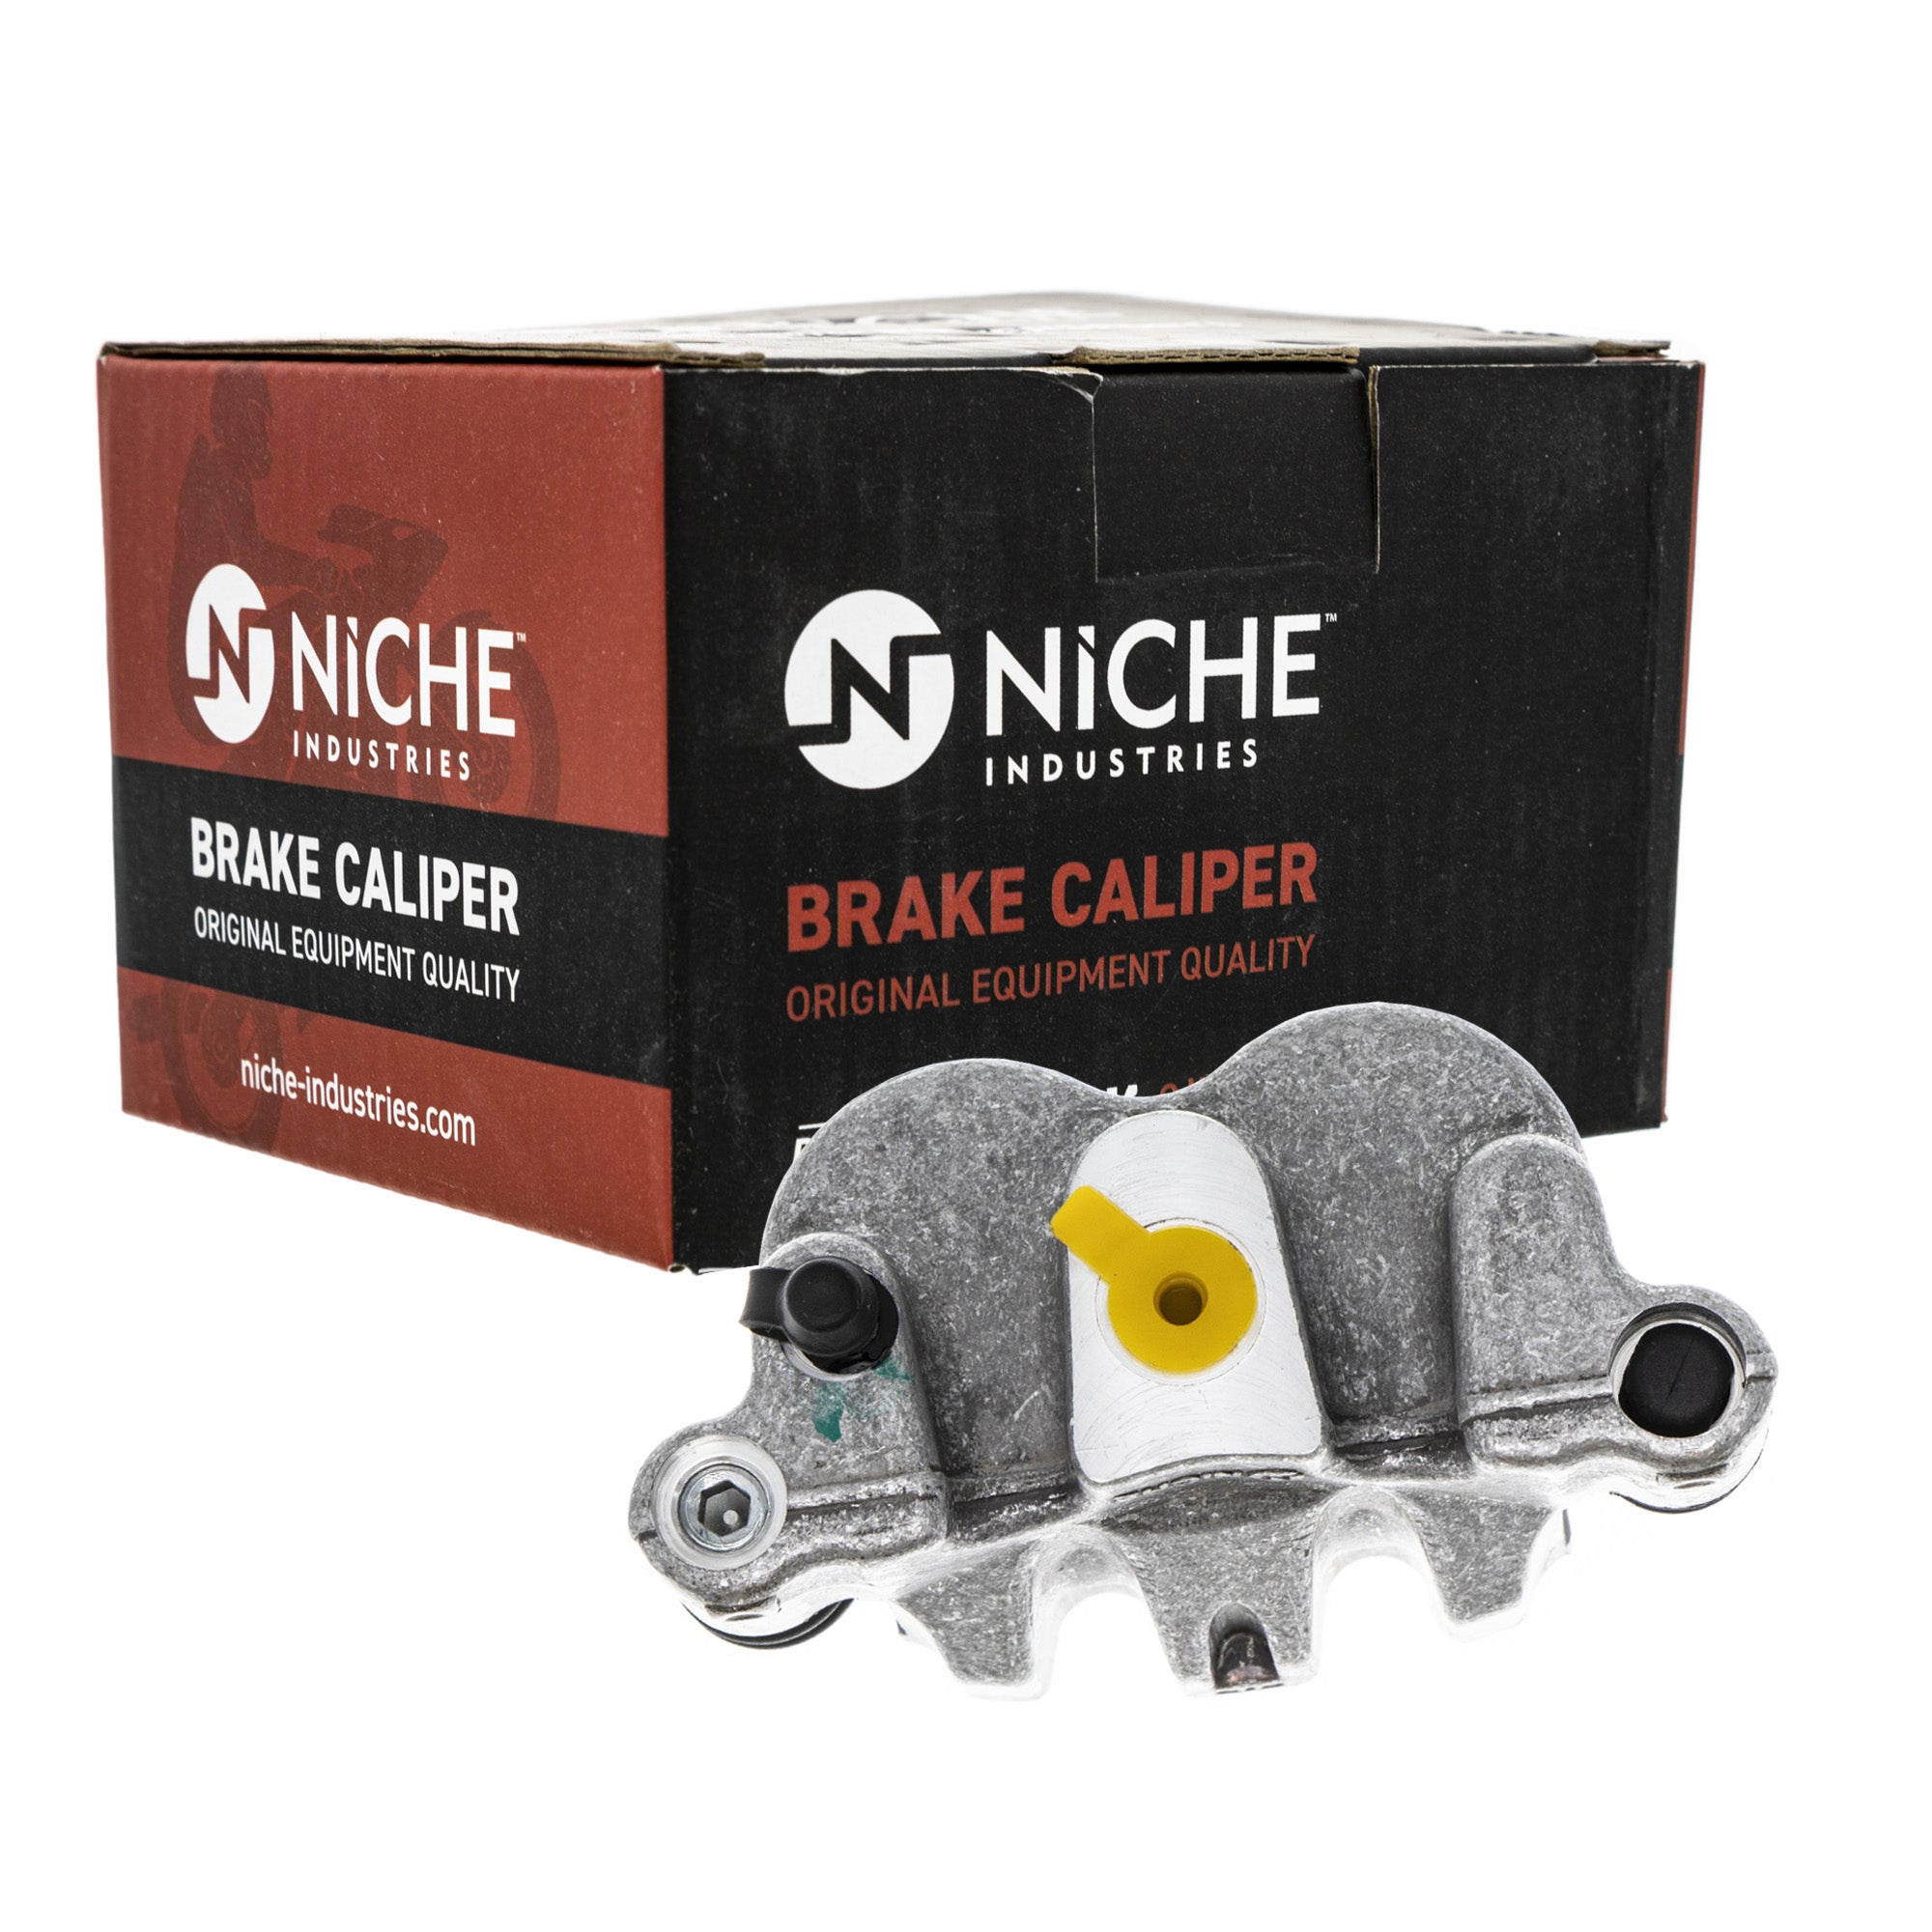 NICHE MK1008228 Brake Caliper